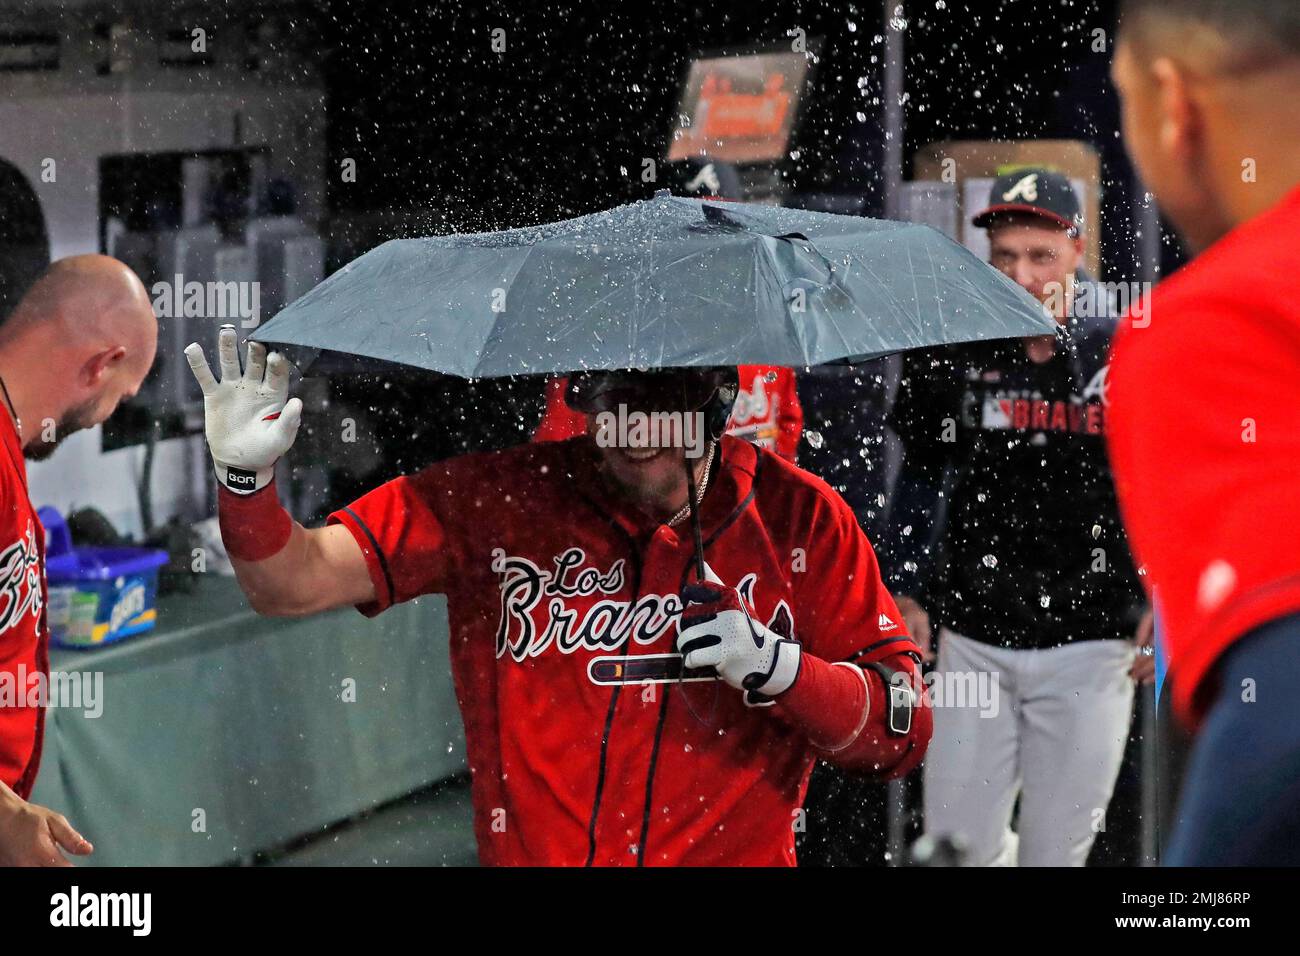 Josh Donaldson got an umbrella after a home run